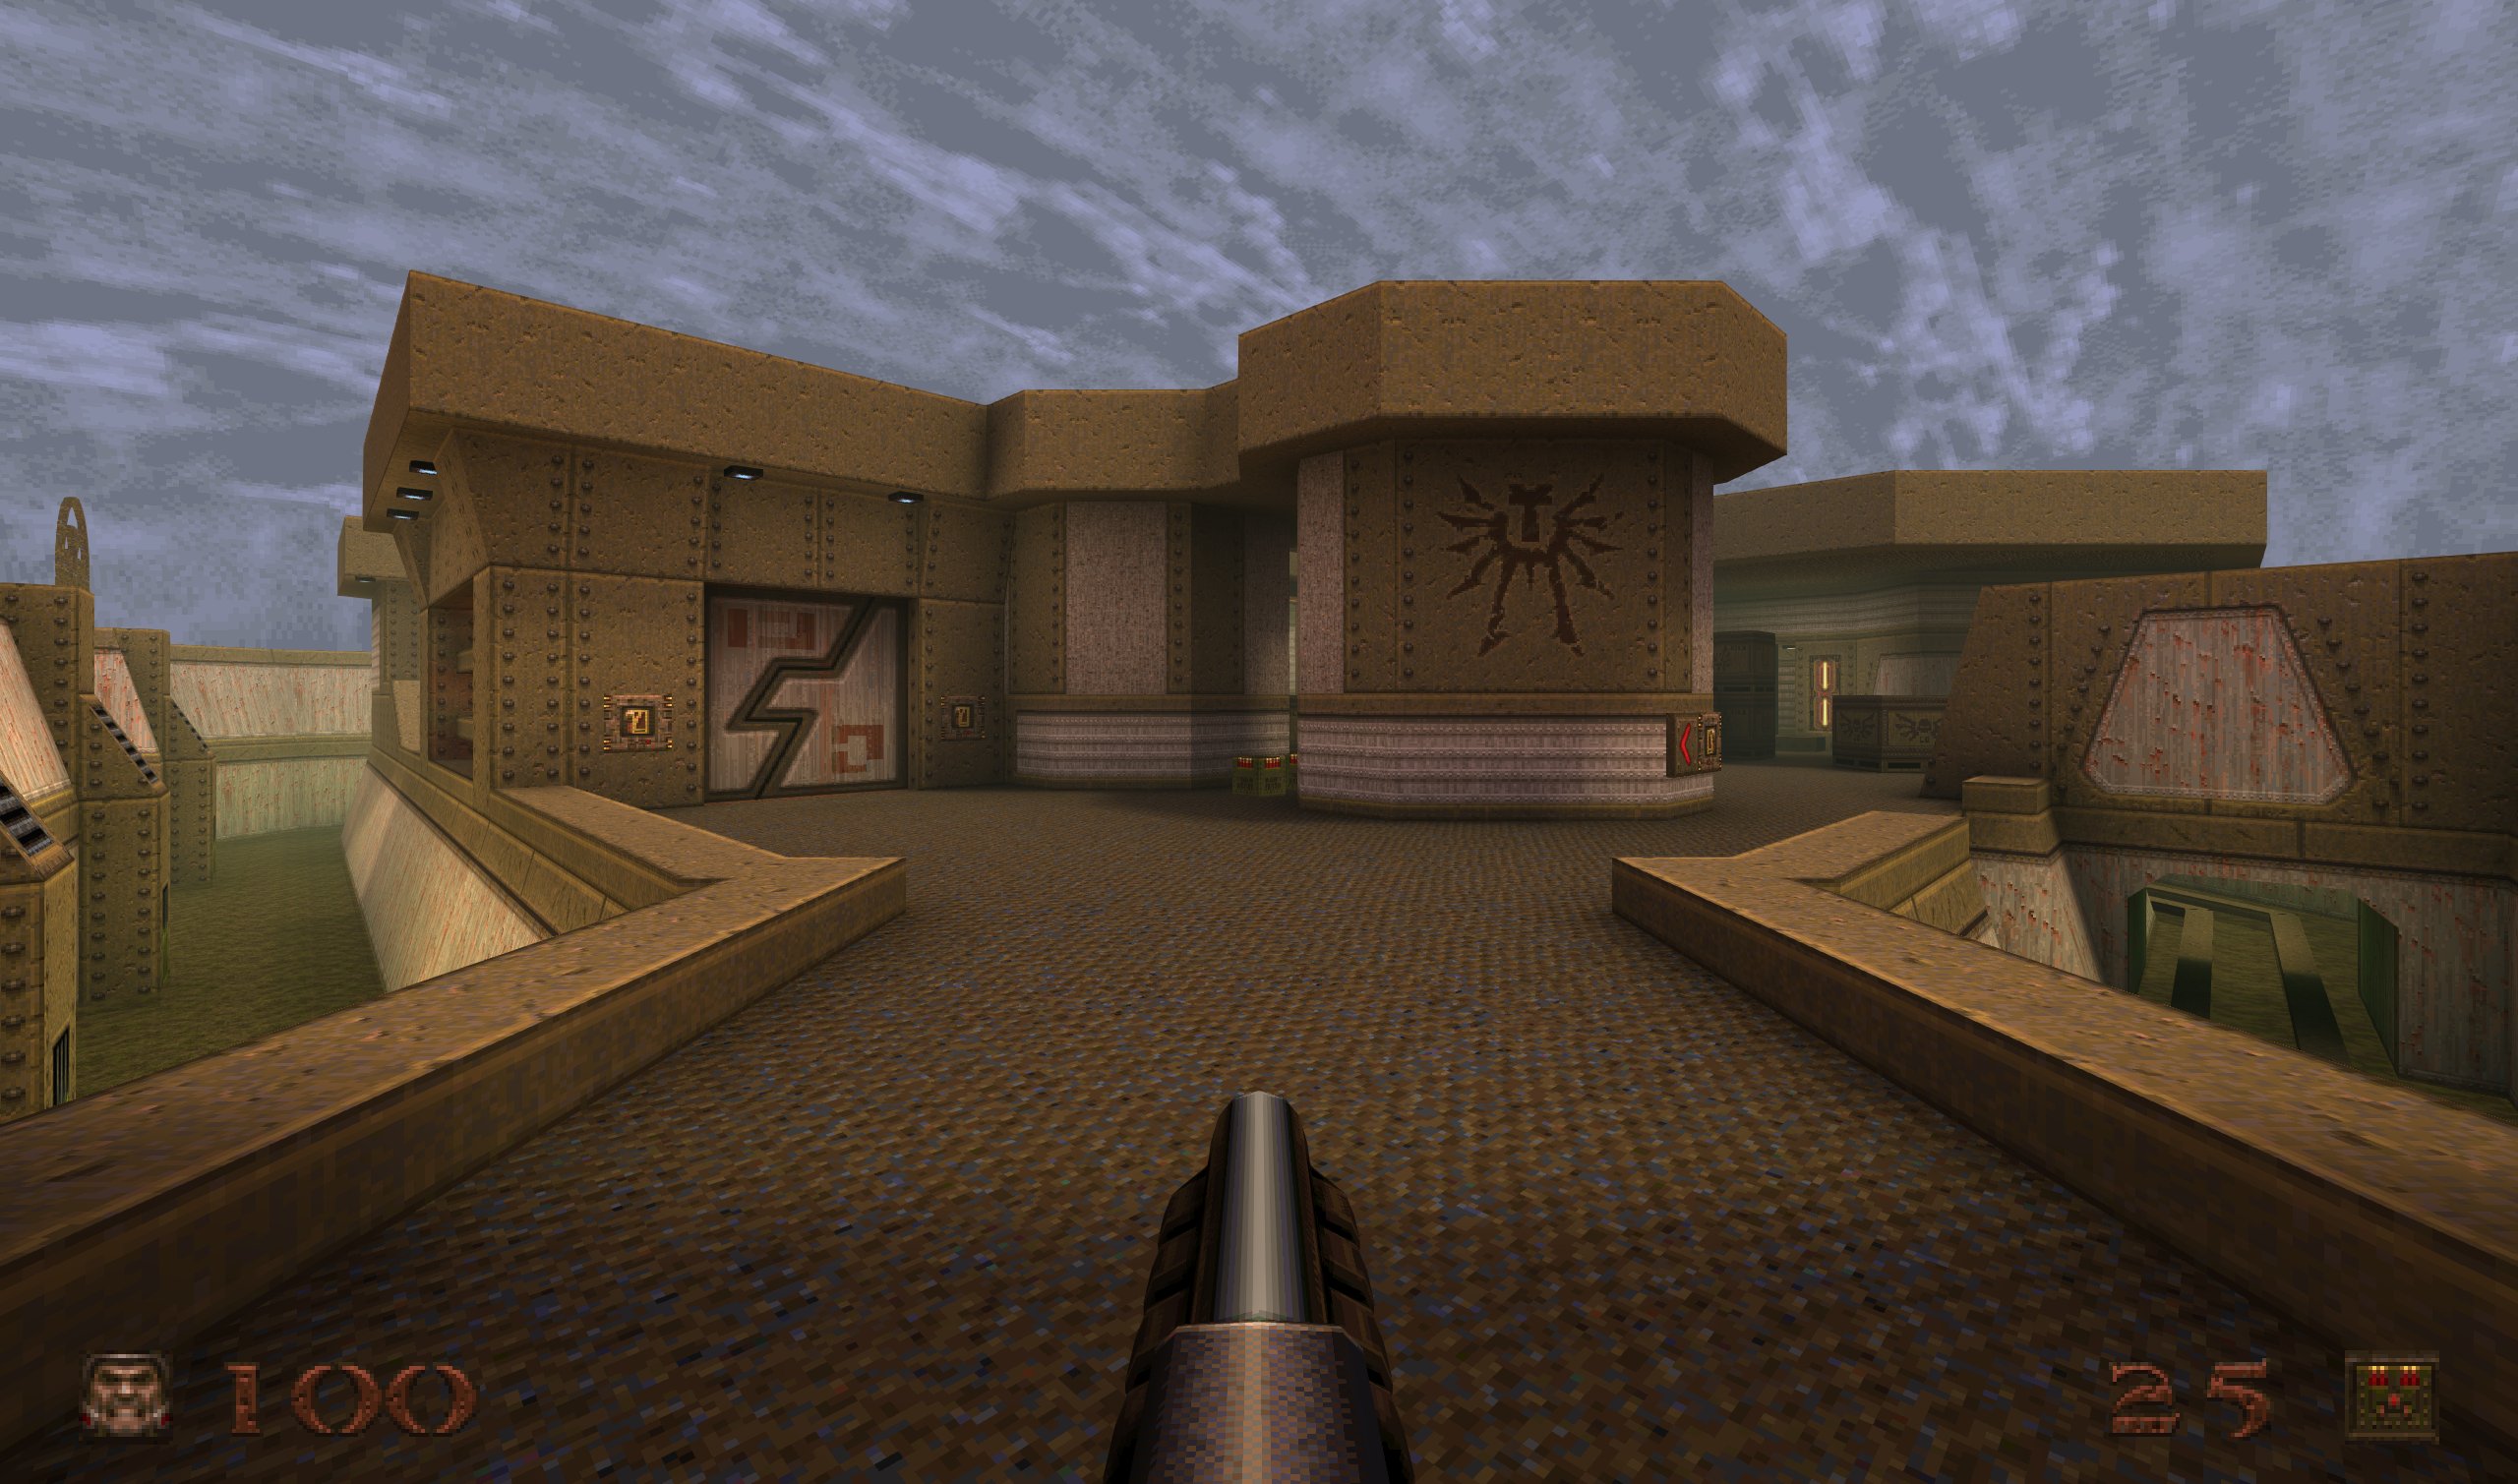 Doom-inspired Quake DLC